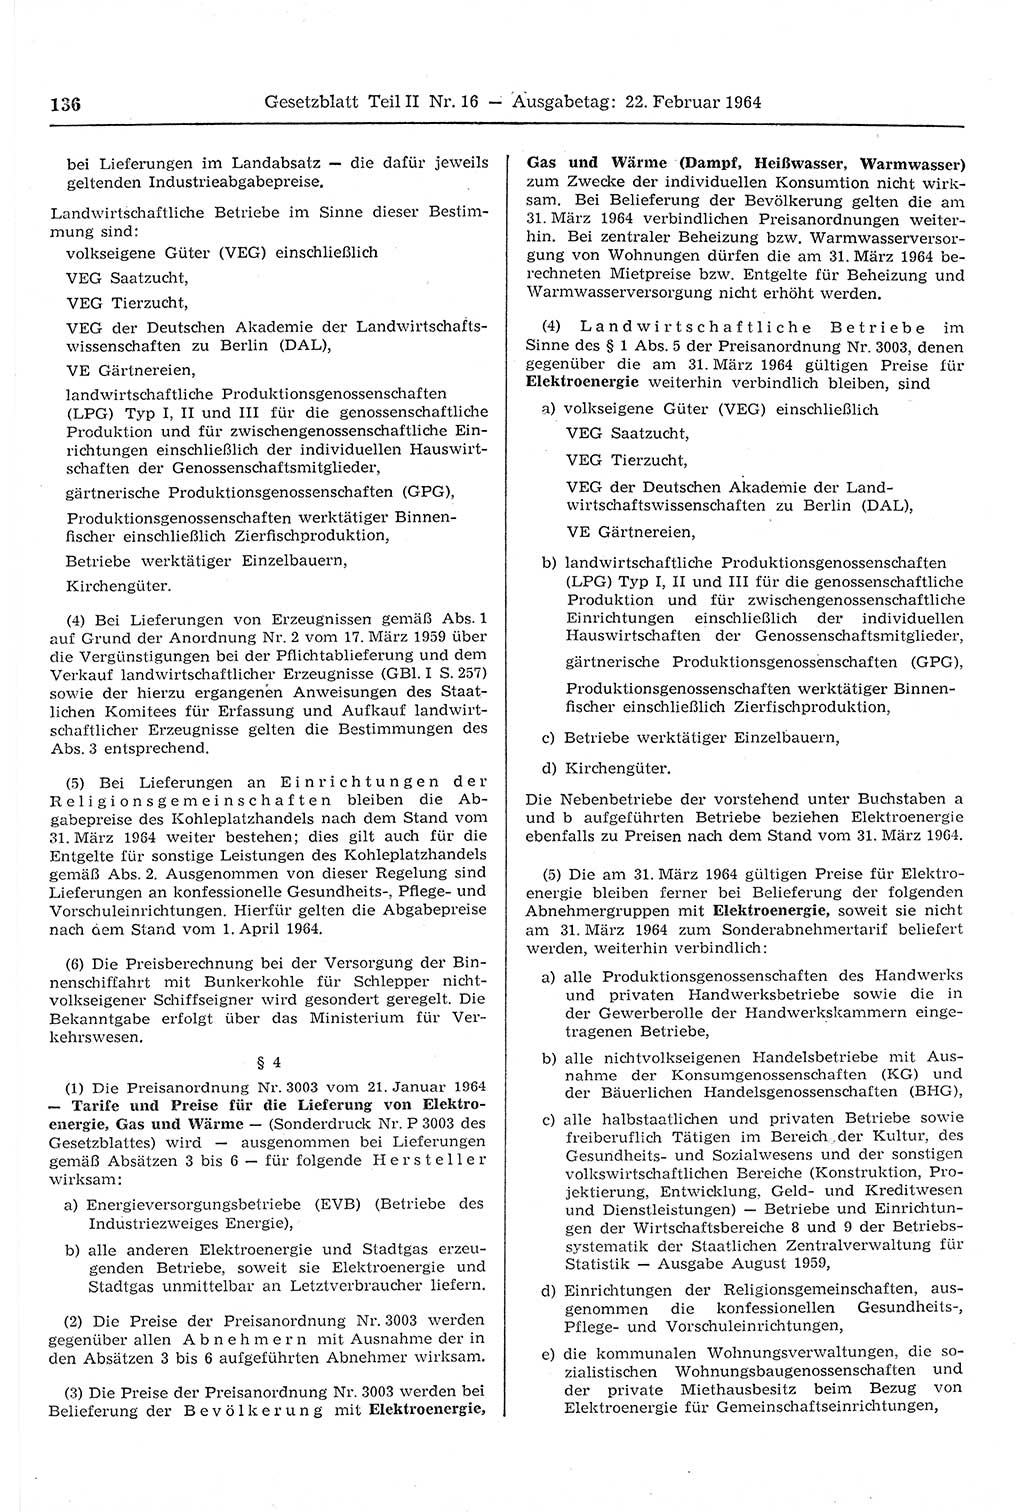 Gesetzblatt (GBl.) der Deutschen Demokratischen Republik (DDR) Teil ⅠⅠ 1964, Seite 136 (GBl. DDR ⅠⅠ 1964, S. 136)